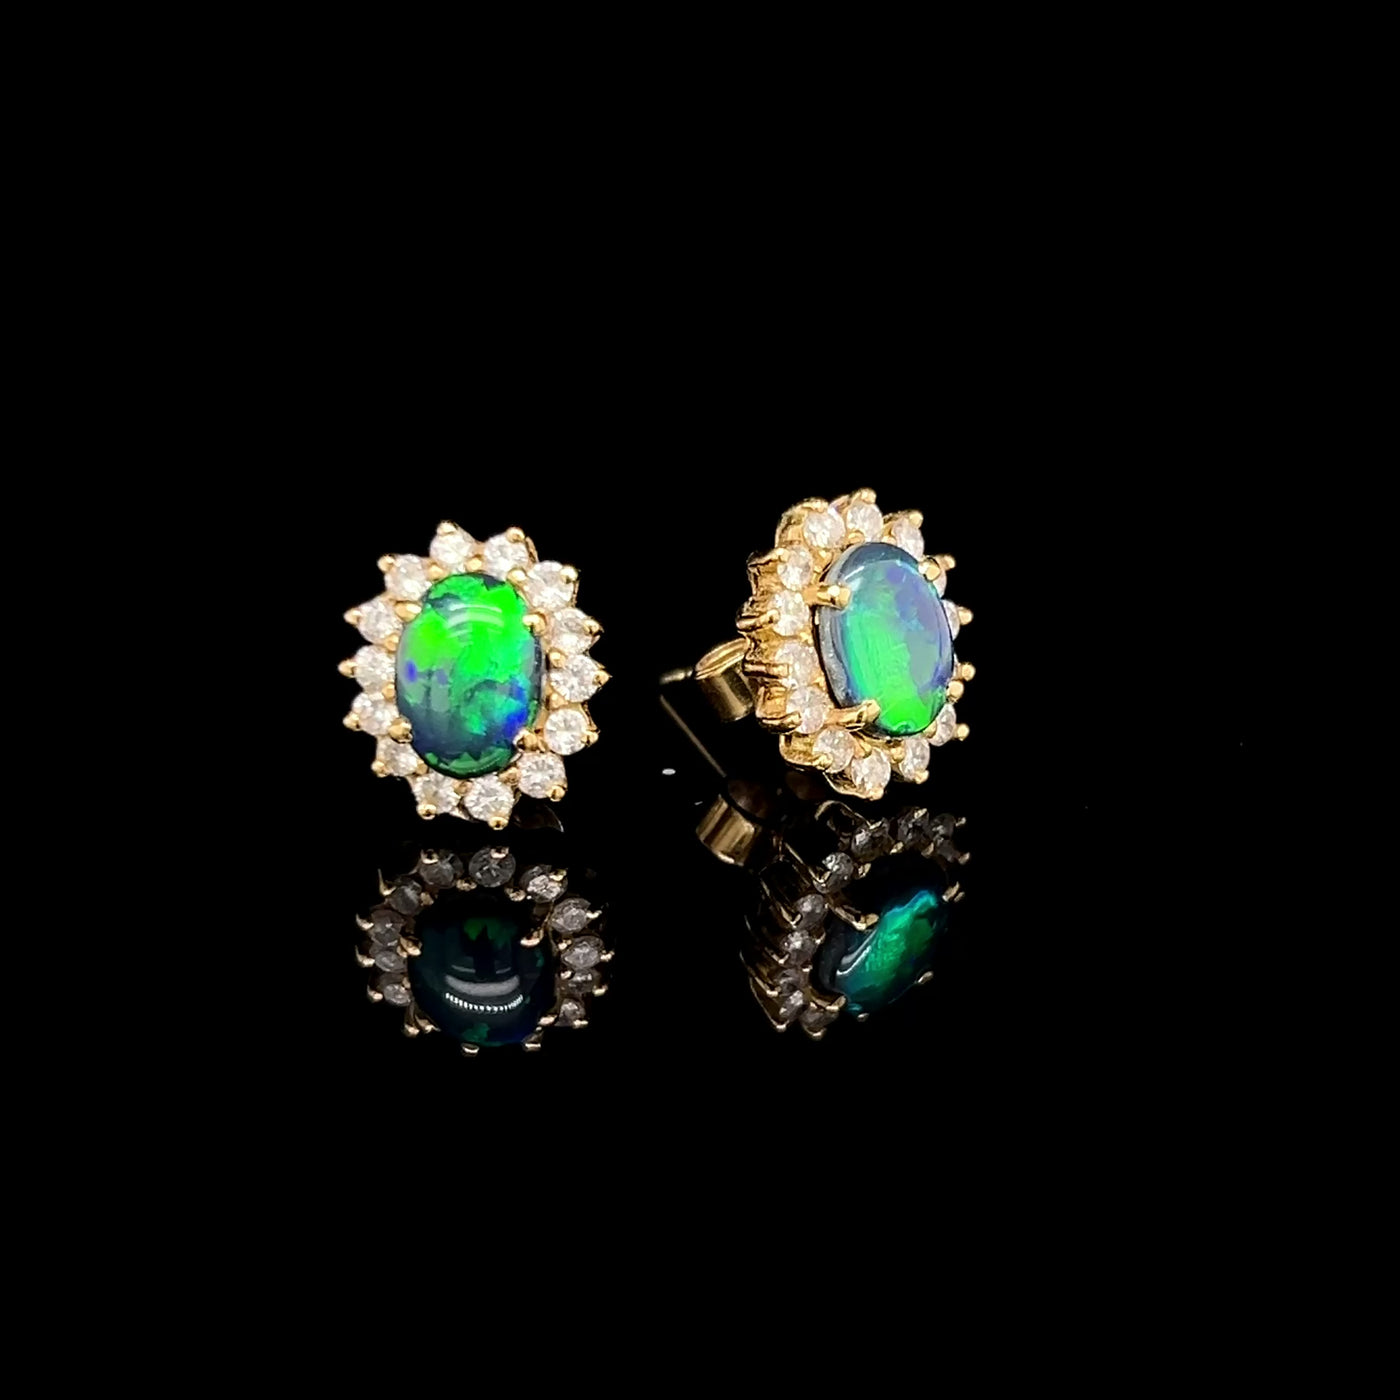 18K Yellow Gold Opal & Diamond Earrings